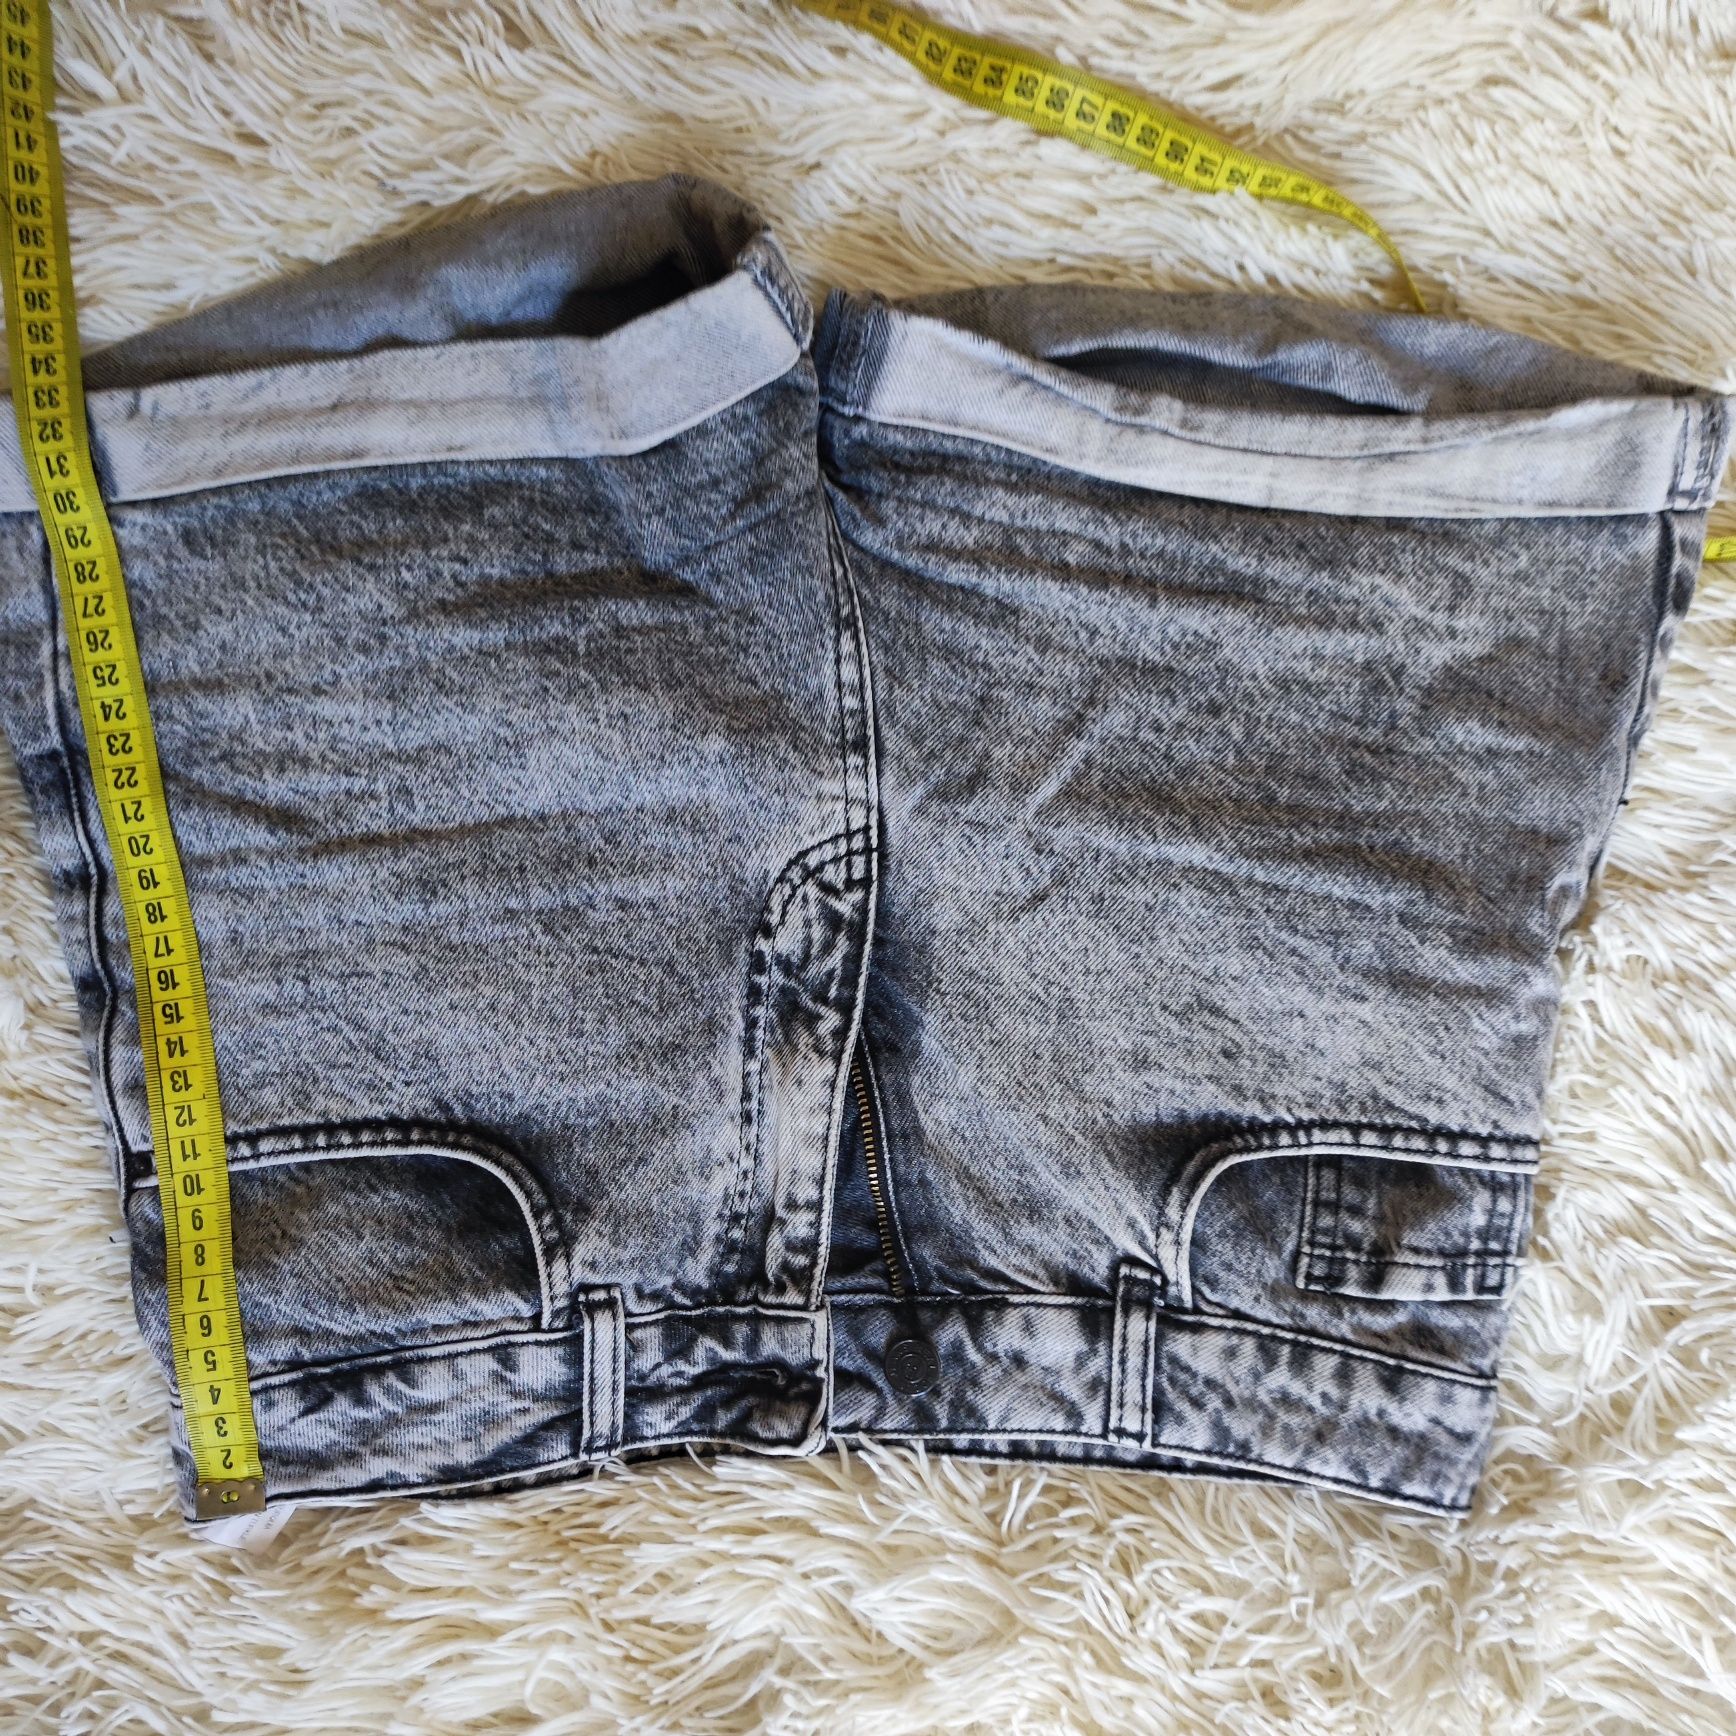 джинсові шорти
півобхват талії 38 
длина по зовнішньому шву 32
состоян